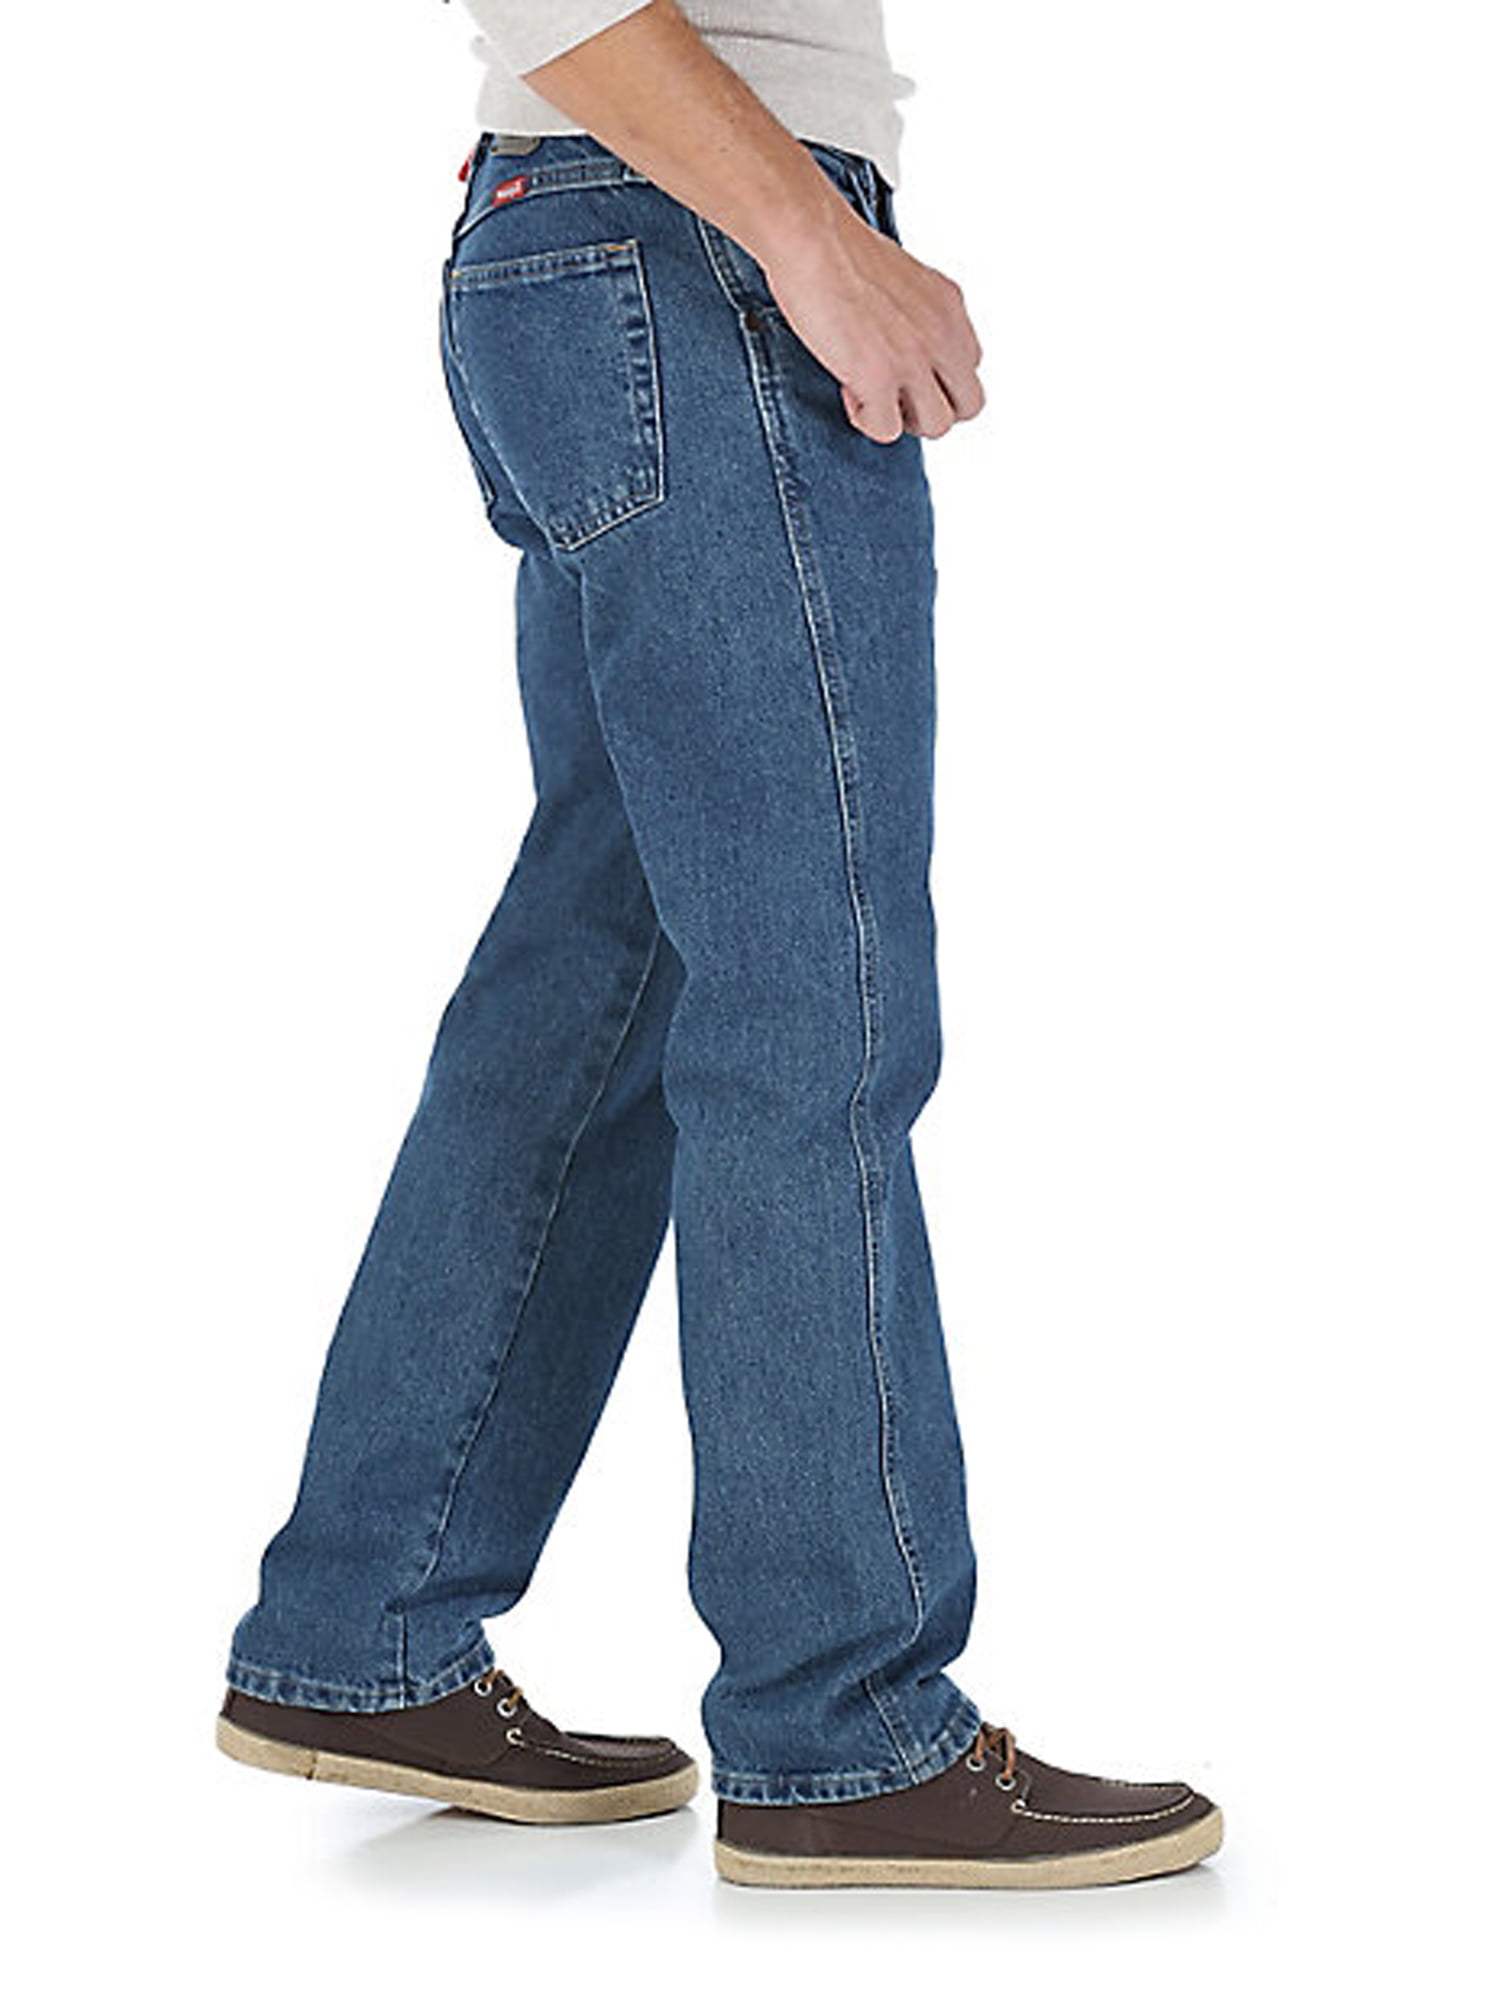 walmart black friday wrangler jeans